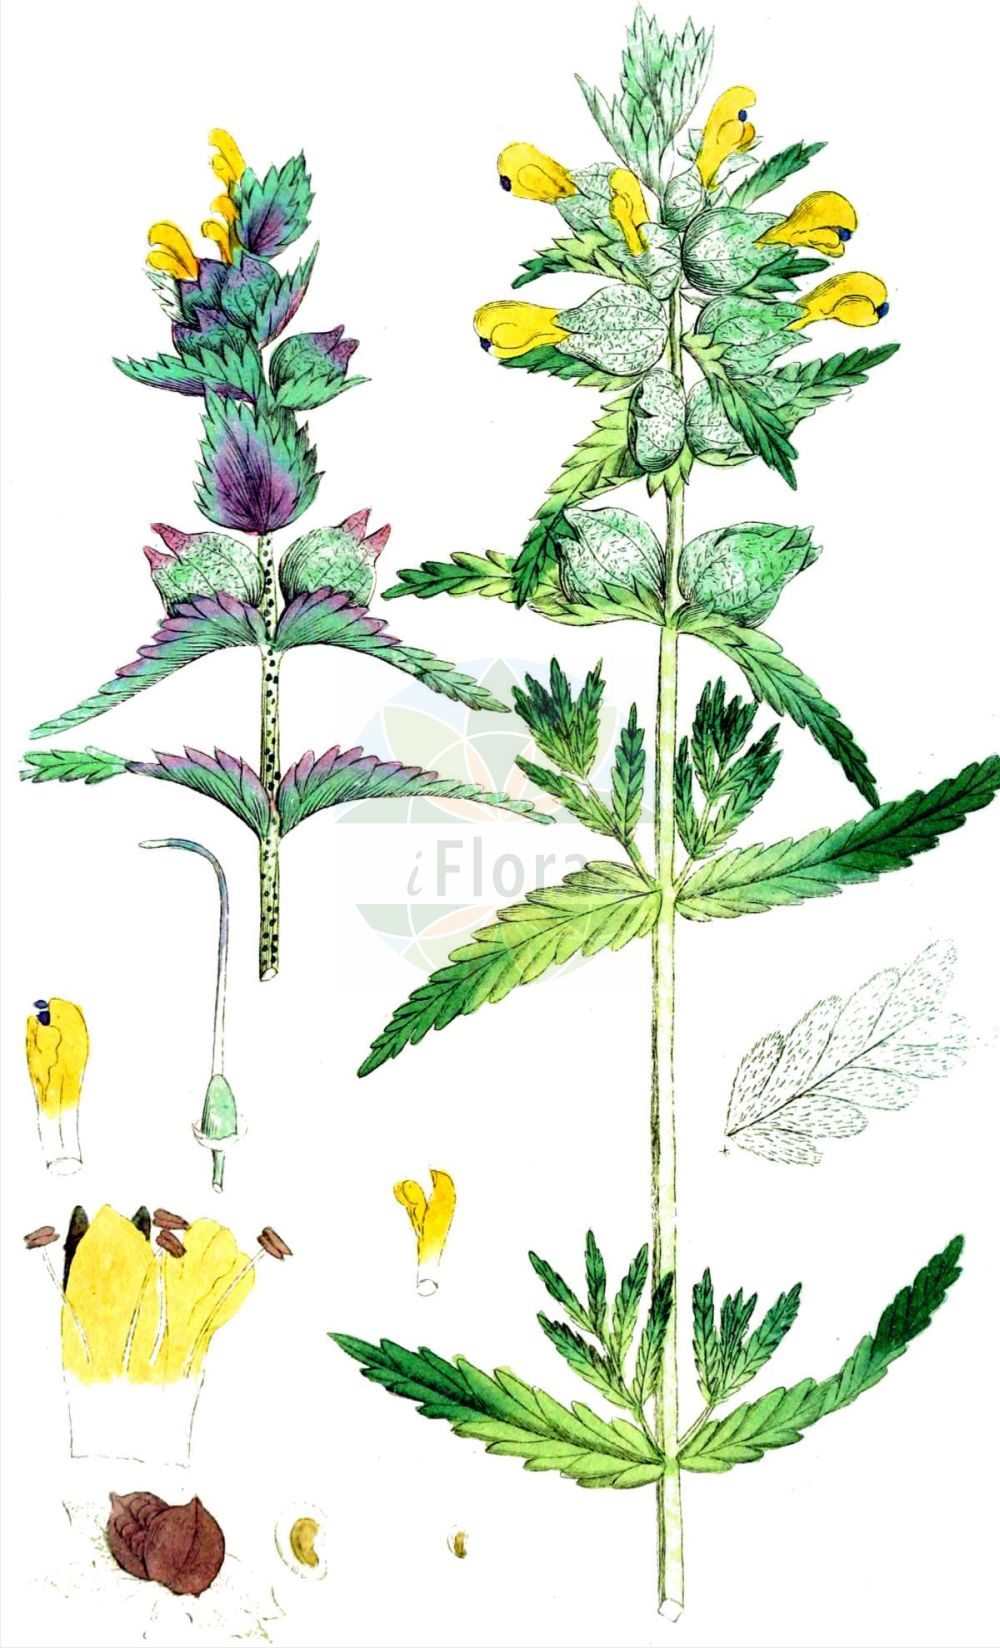 Historische Abbildung von Rhinanthus glacialis (Grannen-Klappertopf). Das Bild zeigt Blatt, Bluete, Frucht und Same. ---- Historical Drawing of Rhinanthus glacialis (Grannen-Klappertopf). The image is showing leaf, flower, fruit and seed.(Rhinanthus glacialis,Grannen-Klappertopf,Rhinanthus glacialis,Grannen-Klappertopf,Rhinanthus,Klappertopf,Yellow Rattle,Orobanchaceae,Sommerwurzgewächse,Broomrape family,Blatt,Bluete,Frucht,Same,leaf,flower,fruit,seed,Svensk Botanik (Svensk Botanik))